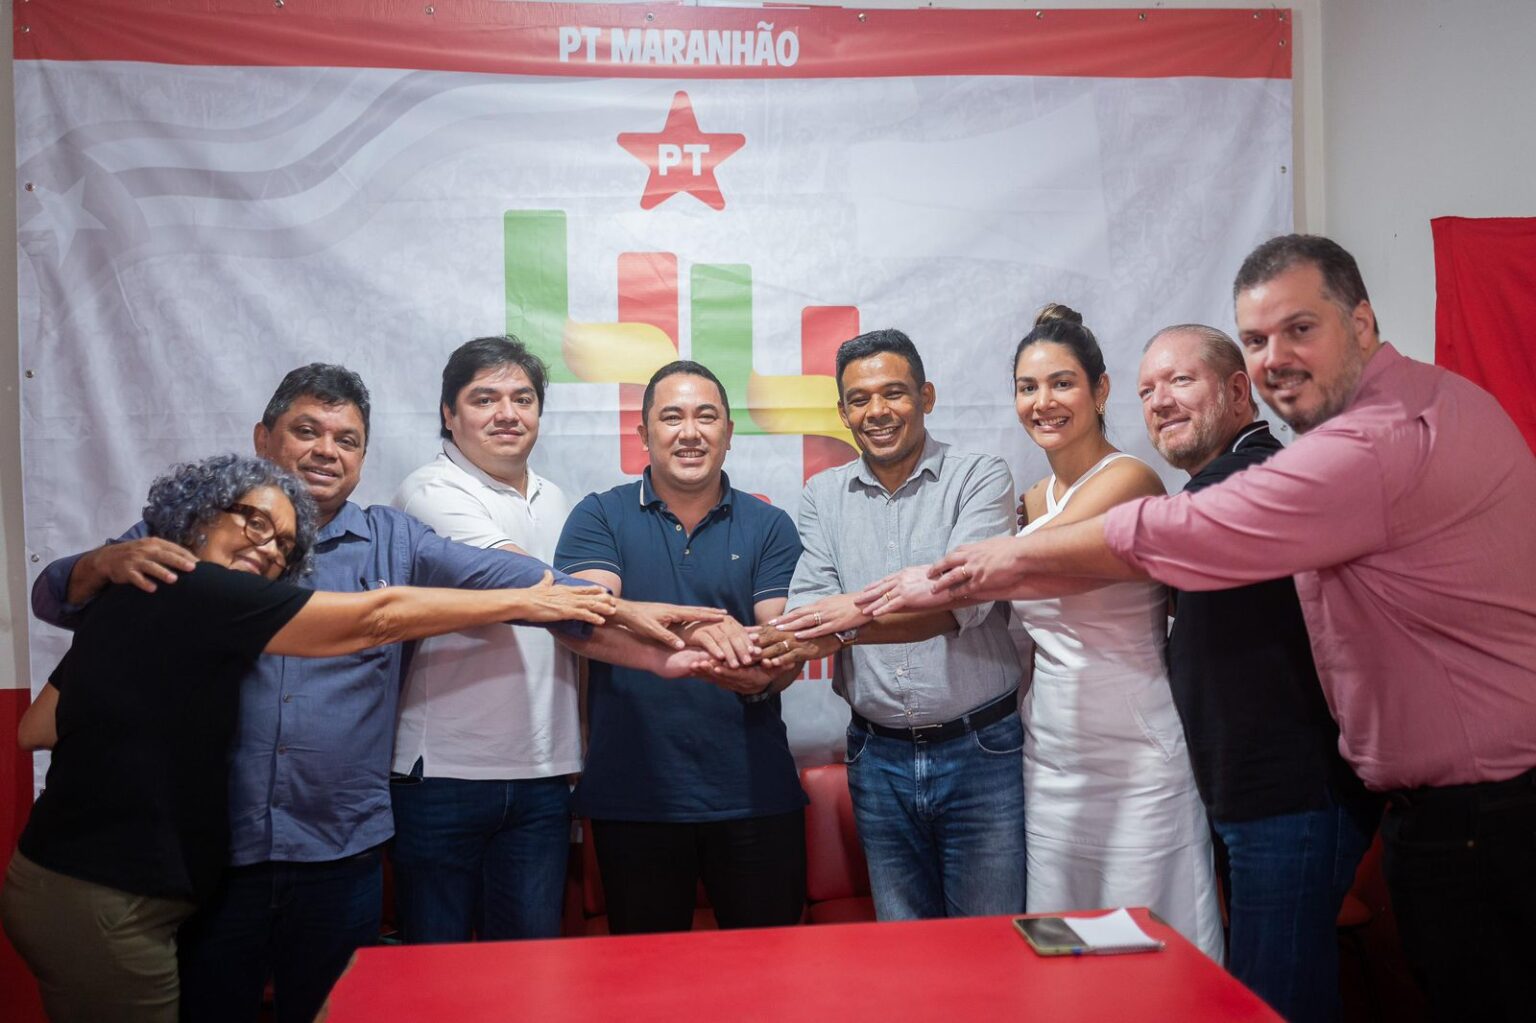 Cabo eleitoral de Bolsonaro na última eleição em Pinheiro recebe apoio do PT